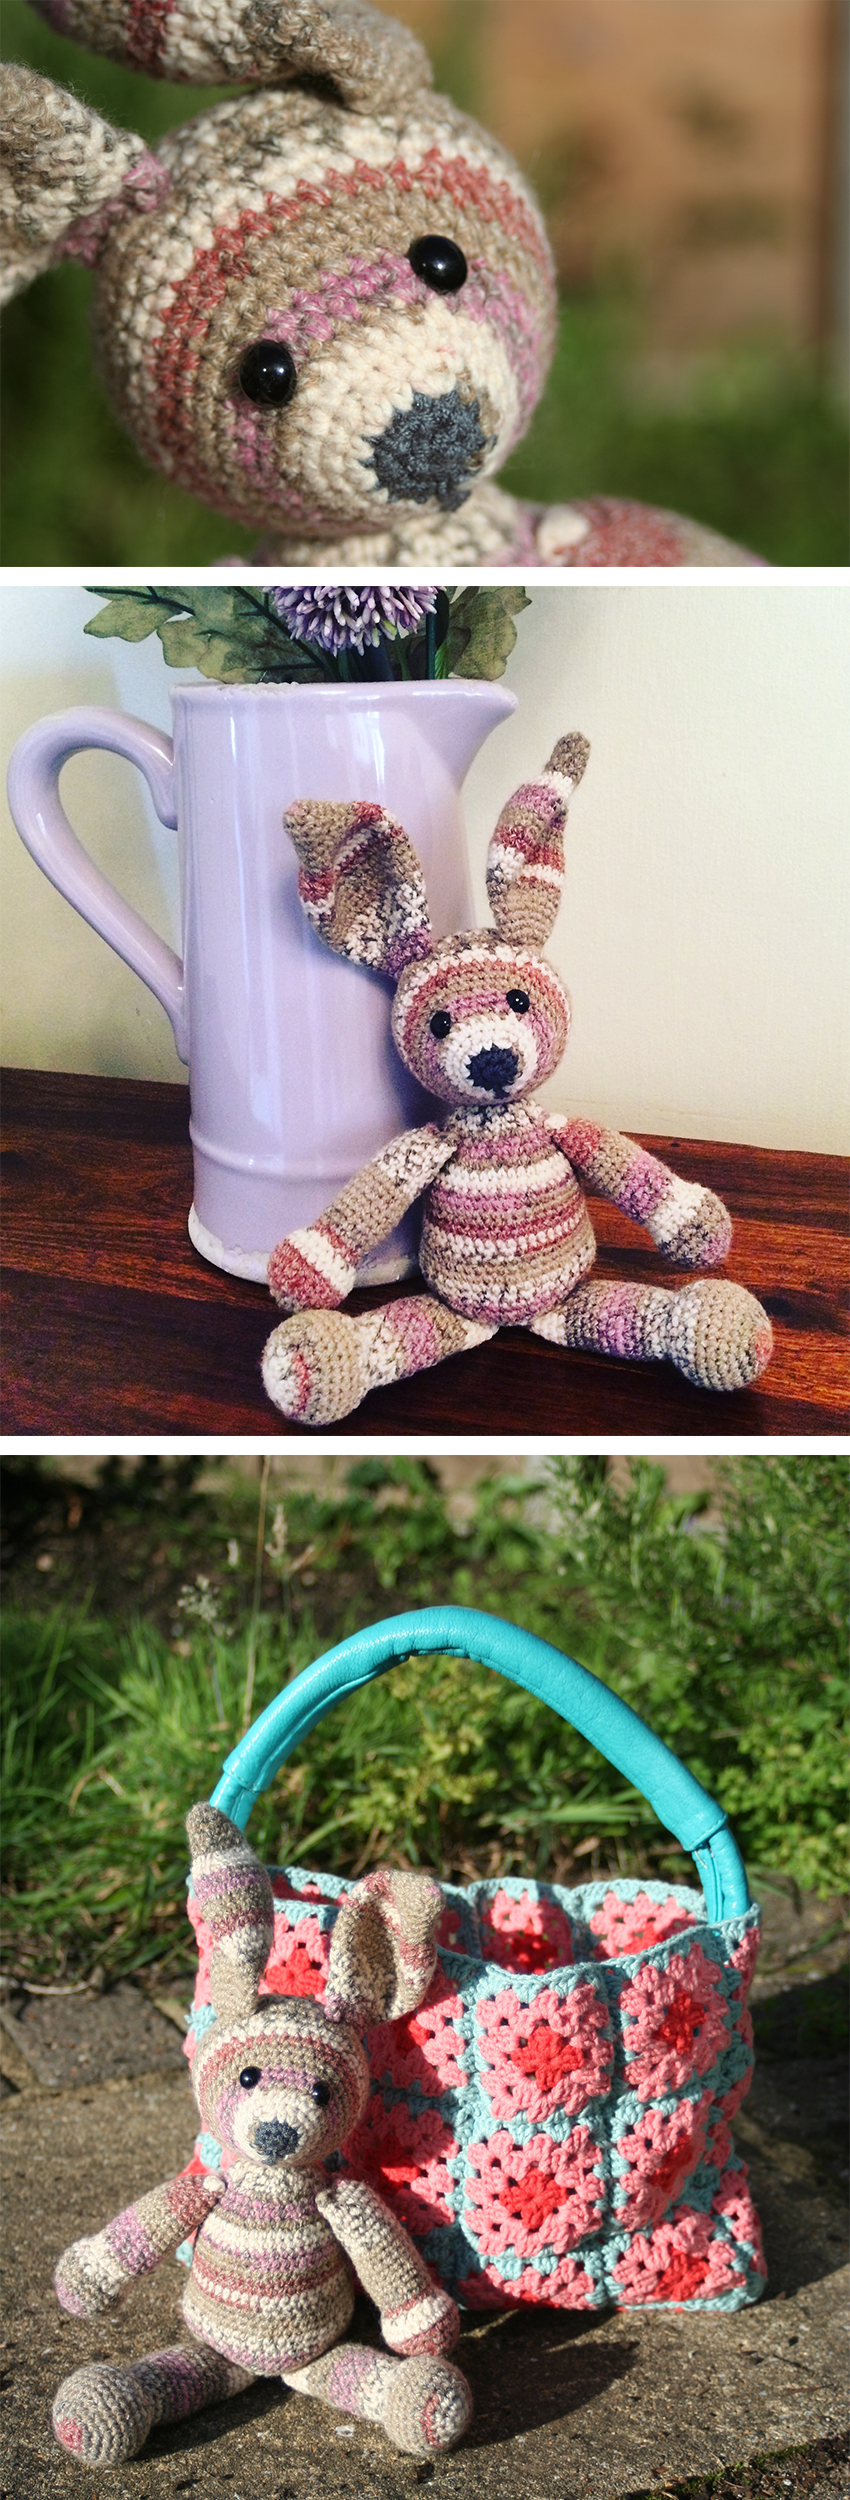 Free Crochet Bunny Pattern